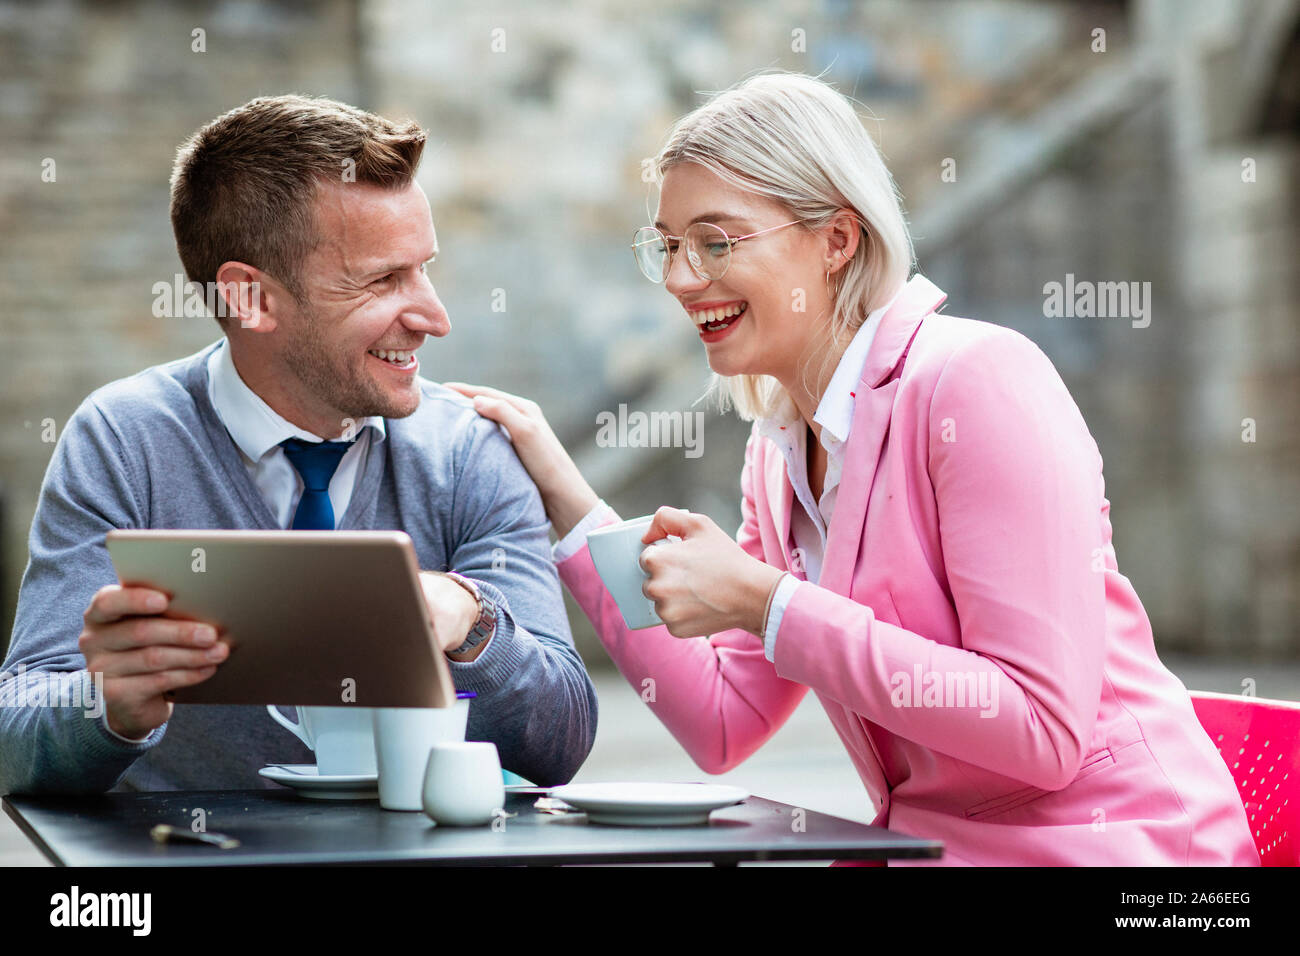 Deux entrepreneurs de s'asseoir et de rire de quelque chose sur une tablette numérique. La businesswoman holding est une boisson chaude et a sa main sur l'affaires Banque D'Images